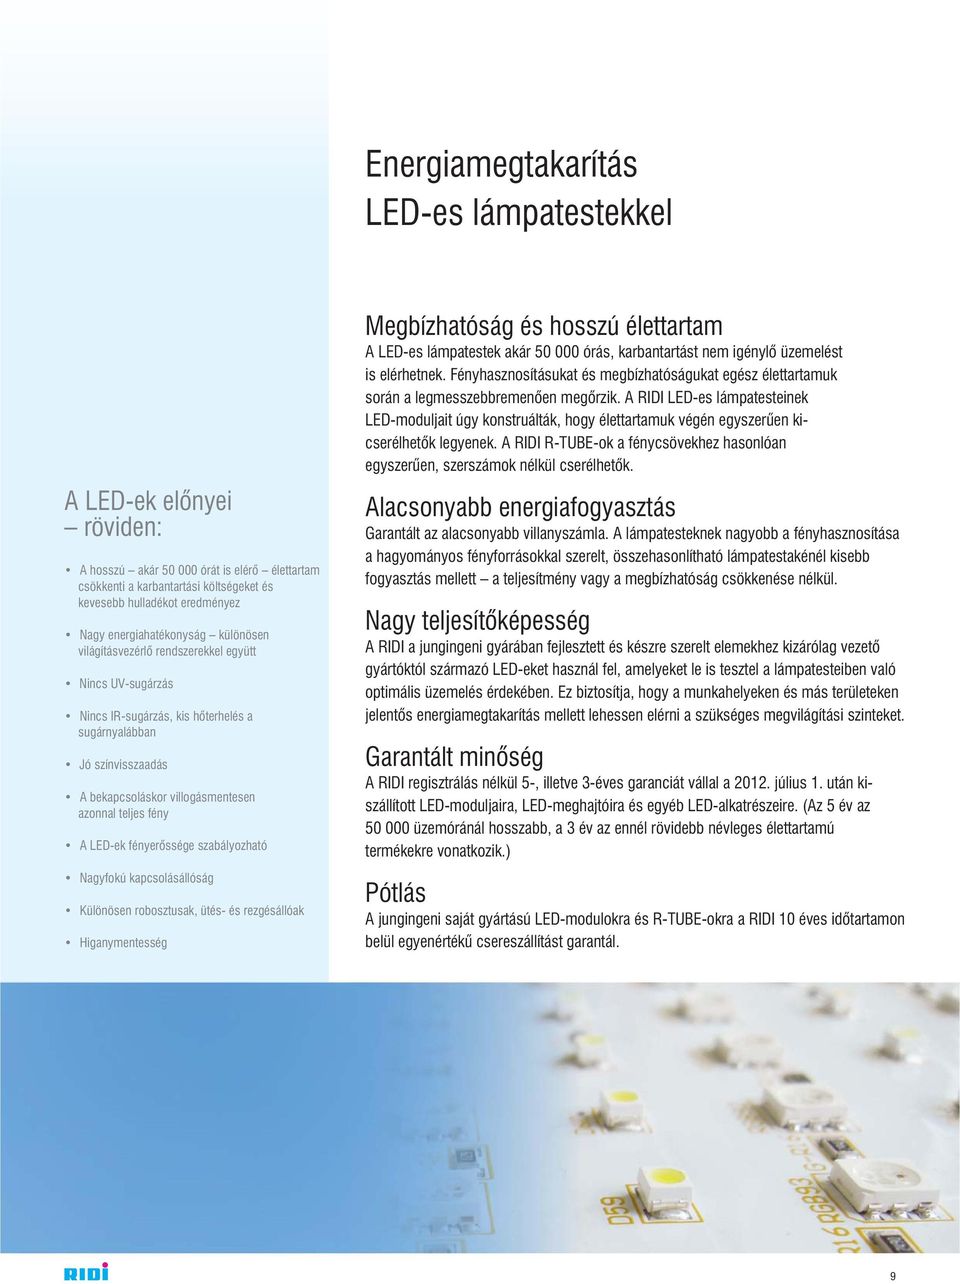 teljes fény A LED-ek fényerõssége szabályozható Nagyfokú kapcsolásállóság Különösen robosztusak, ütés- és rezgésállóak Higanymentesség Megbízhatóság és hosszú élettartam A LED-es lámpatestek akár 50